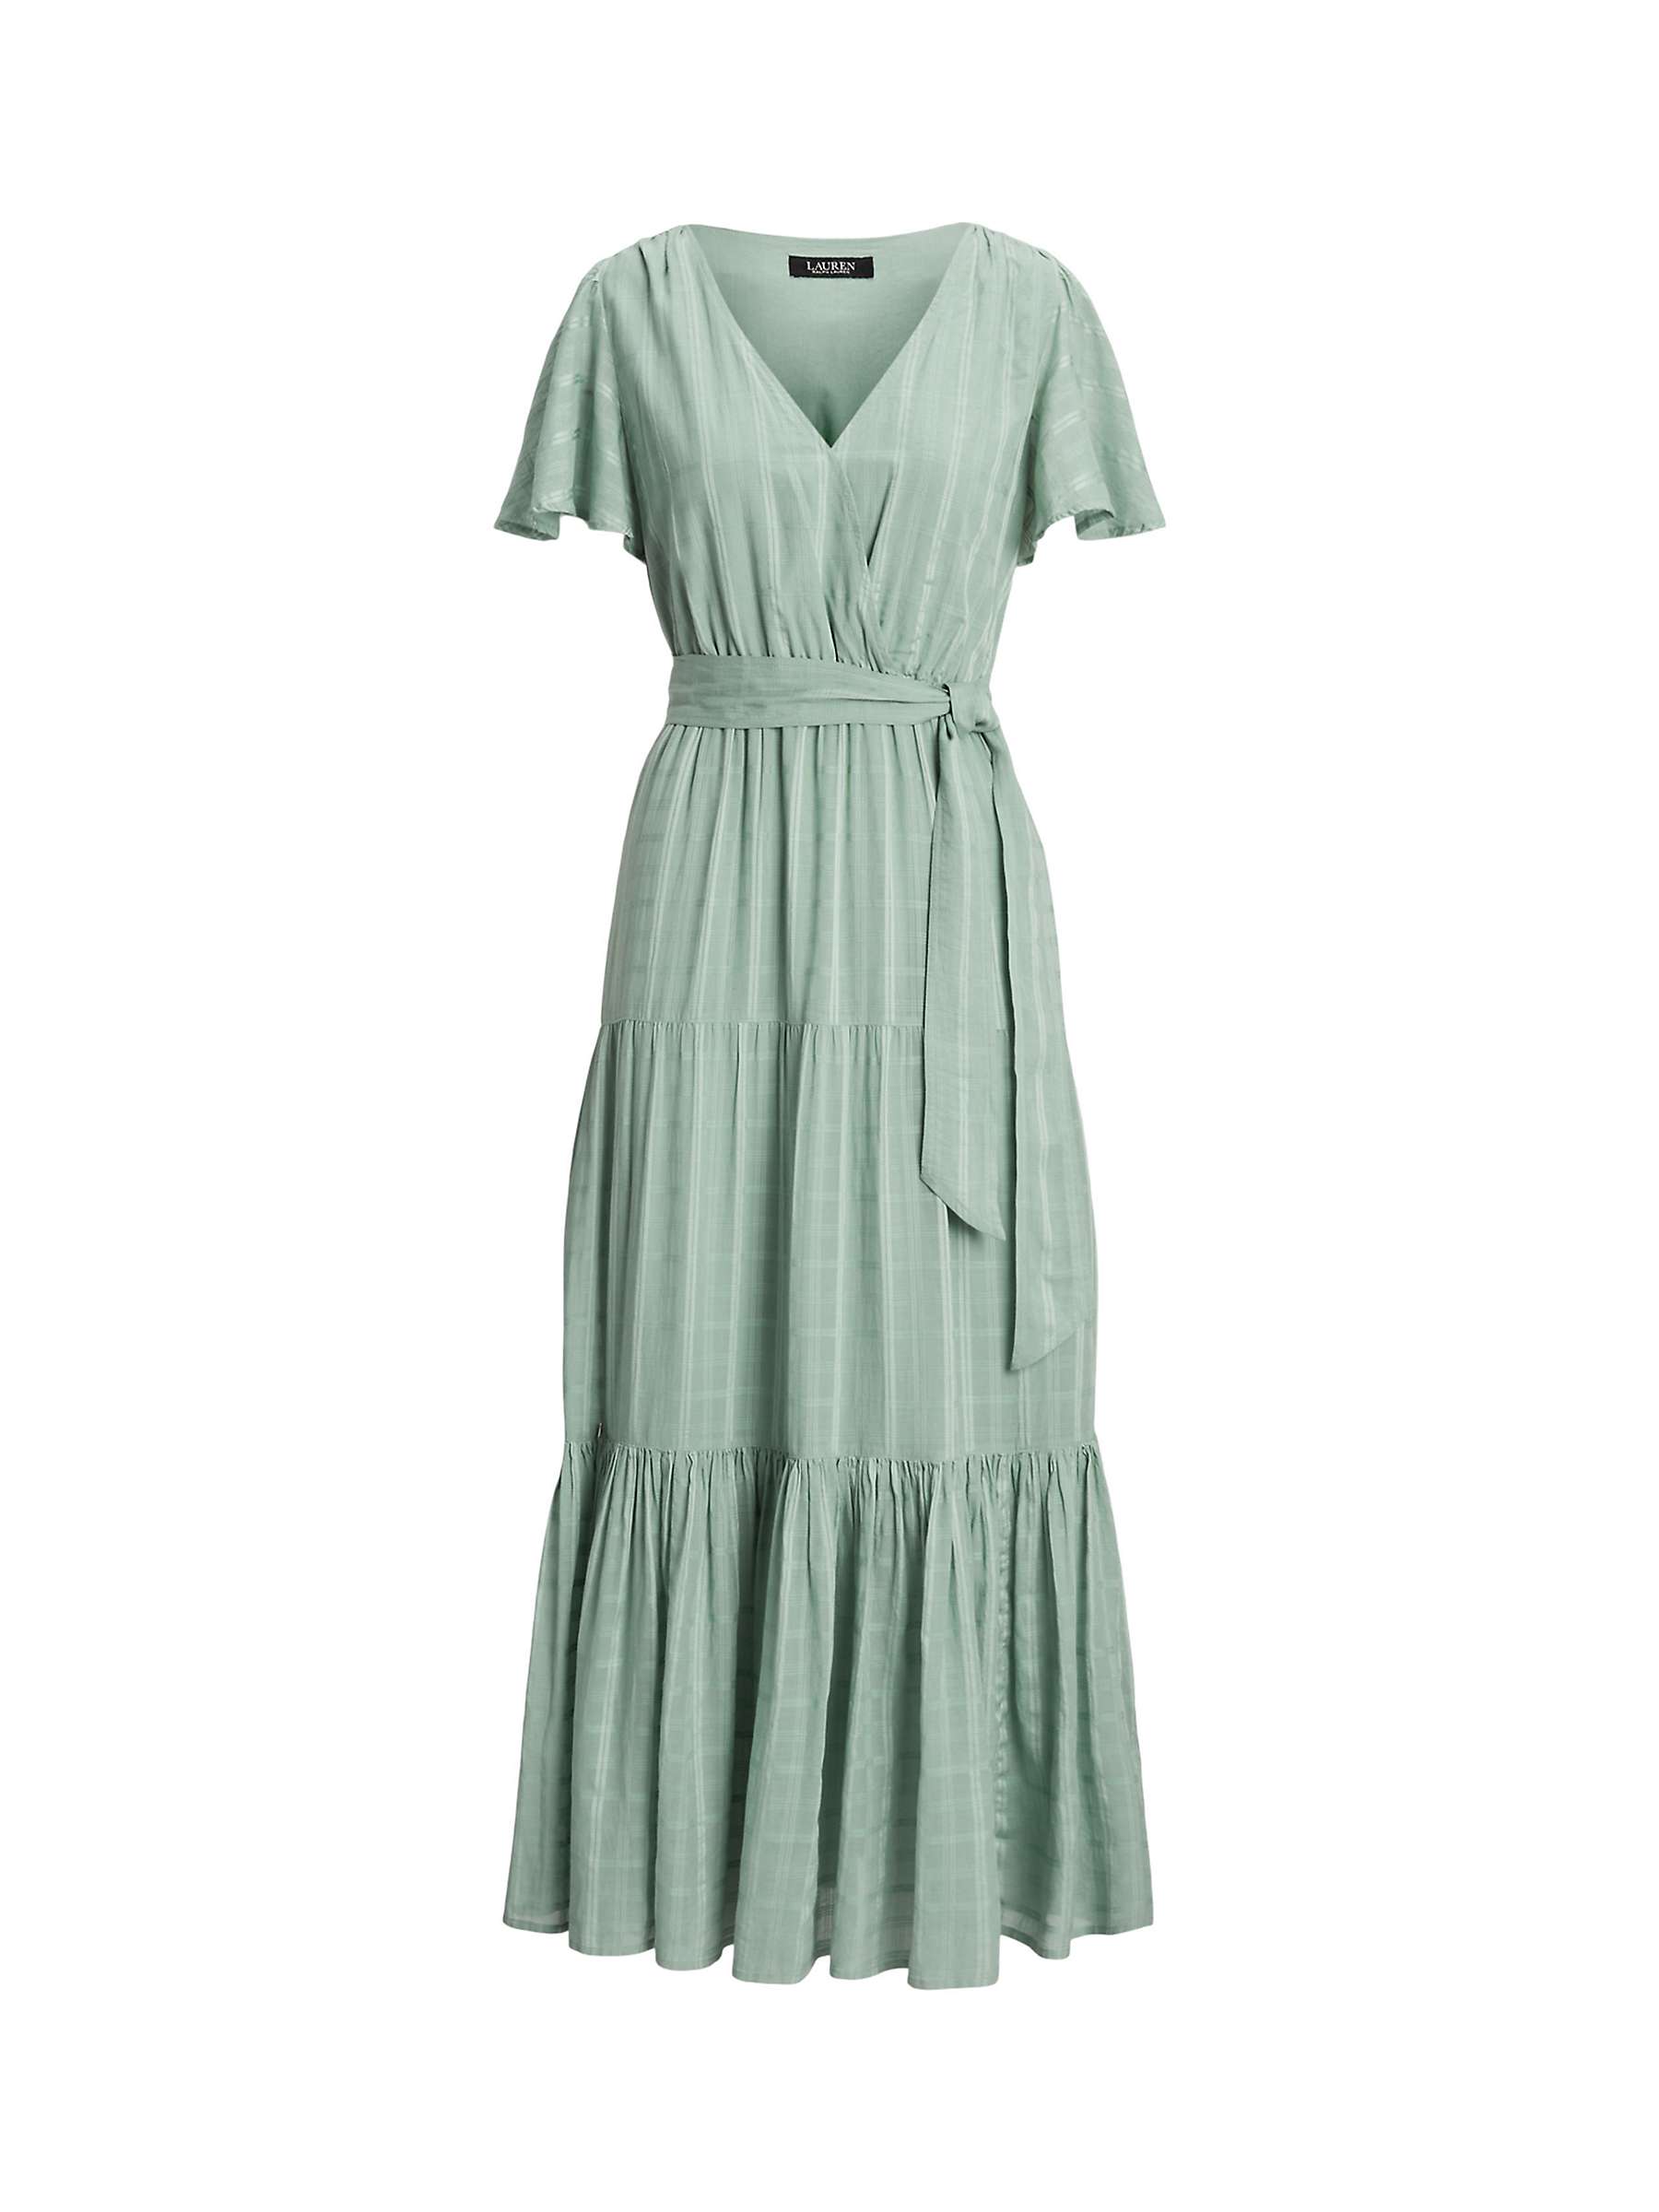 Buy Lauren Ralph Lauren Tilferre Gingham Maxi Dress, Teal Online at johnlewis.com